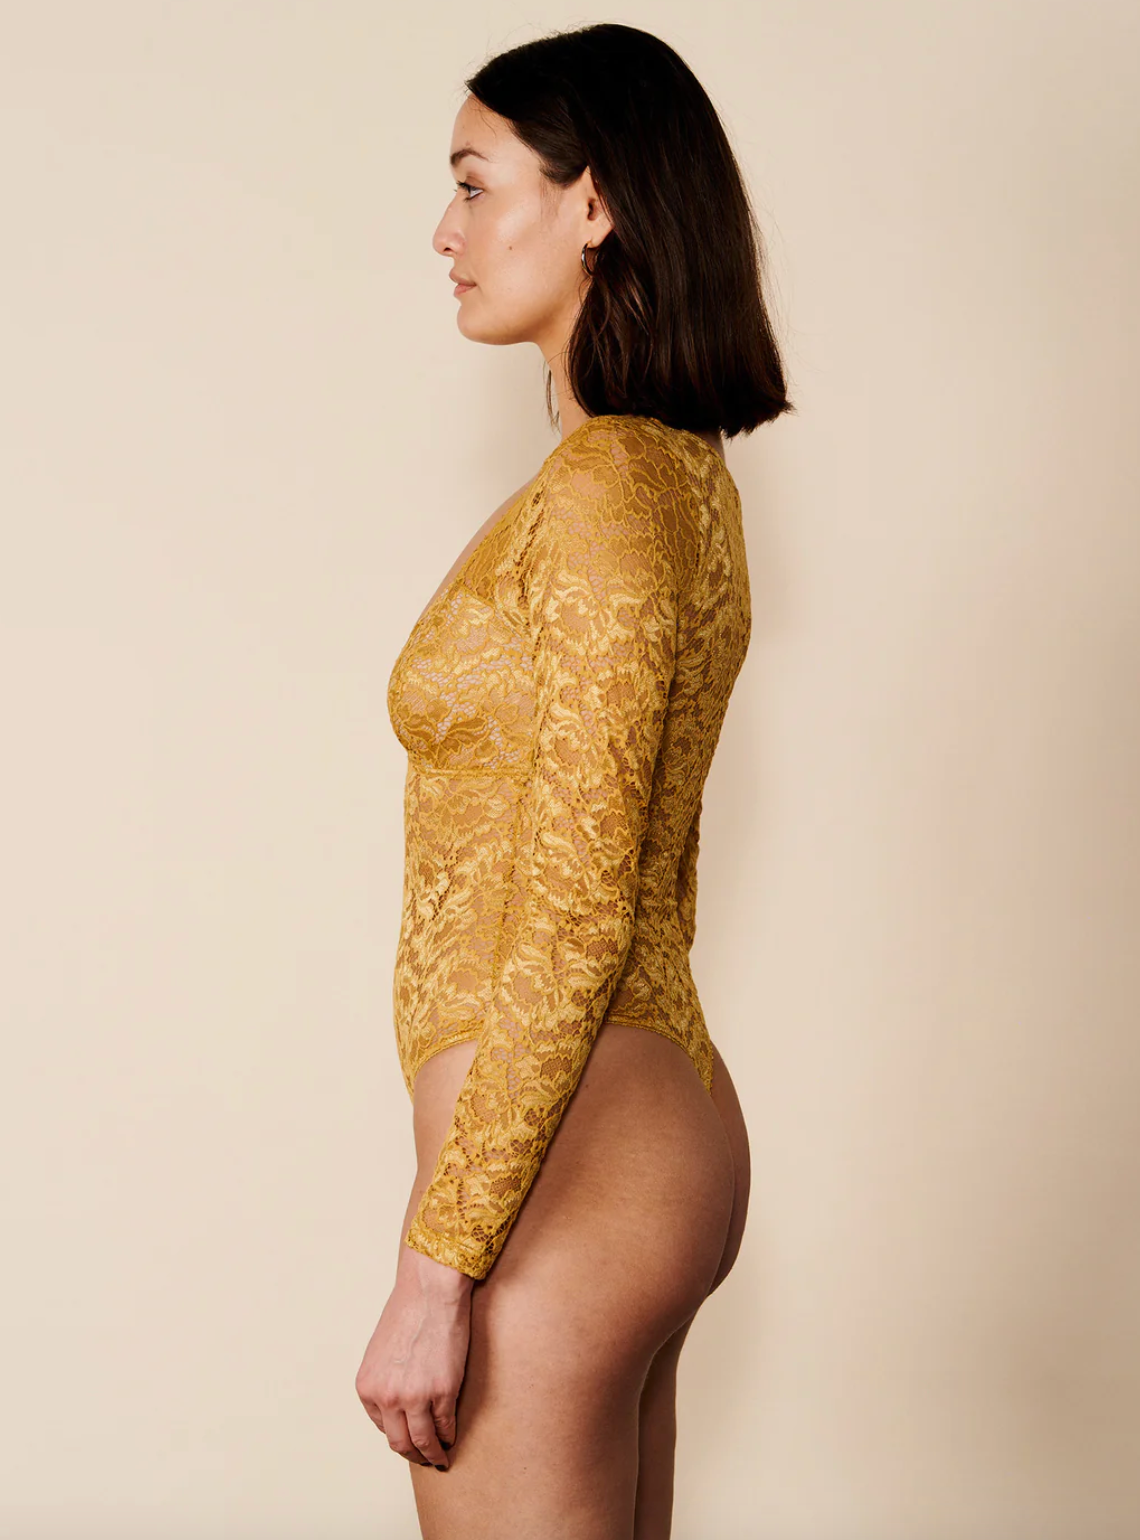 Underprotection Rosie Bodysuit - Mustard